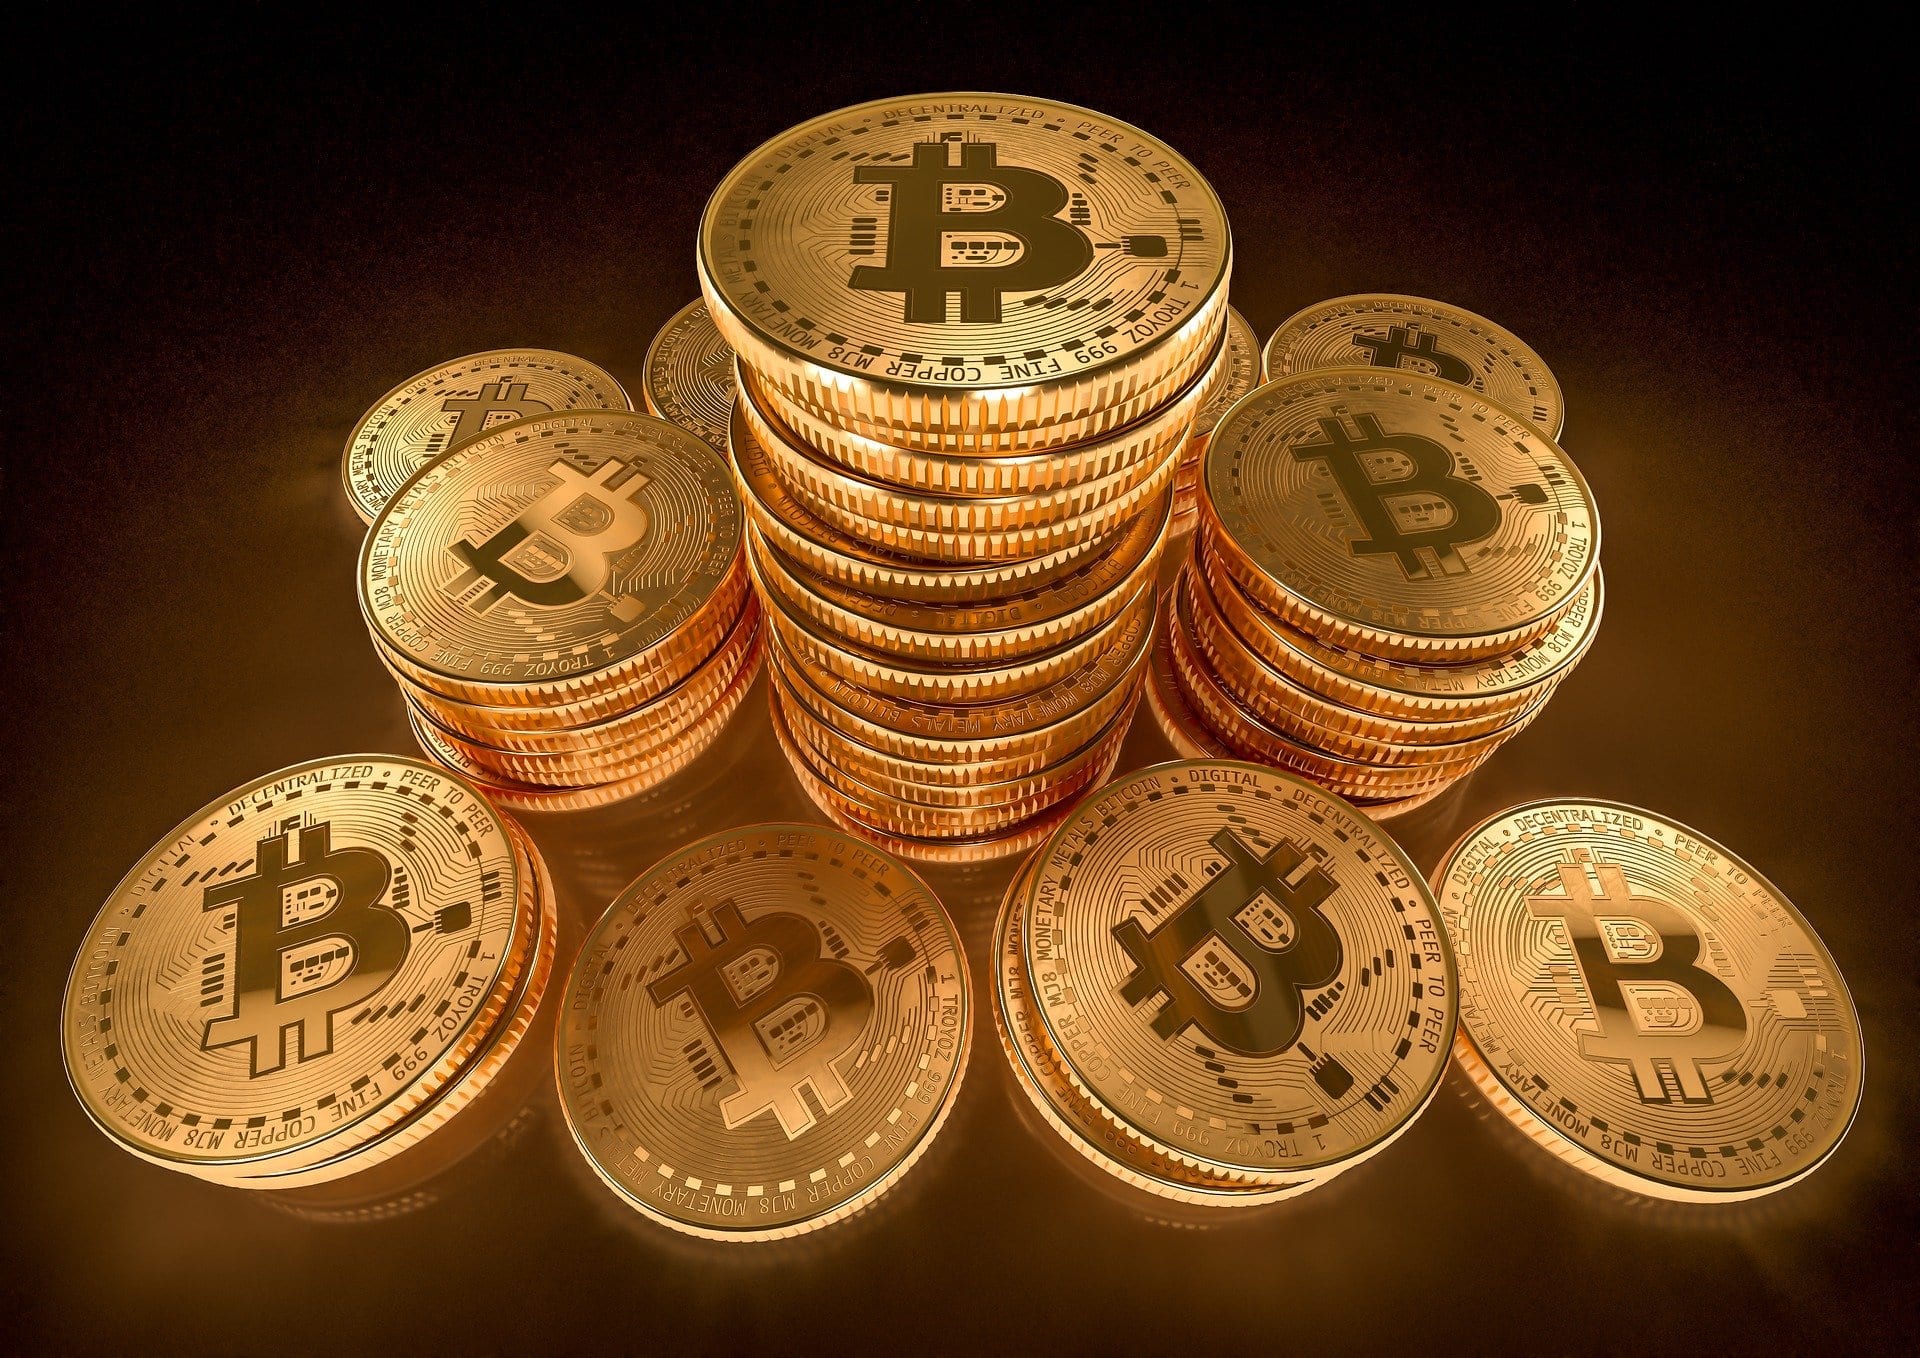 Bitcoin (BTC) koers meer dan 1.800 euro gestegen